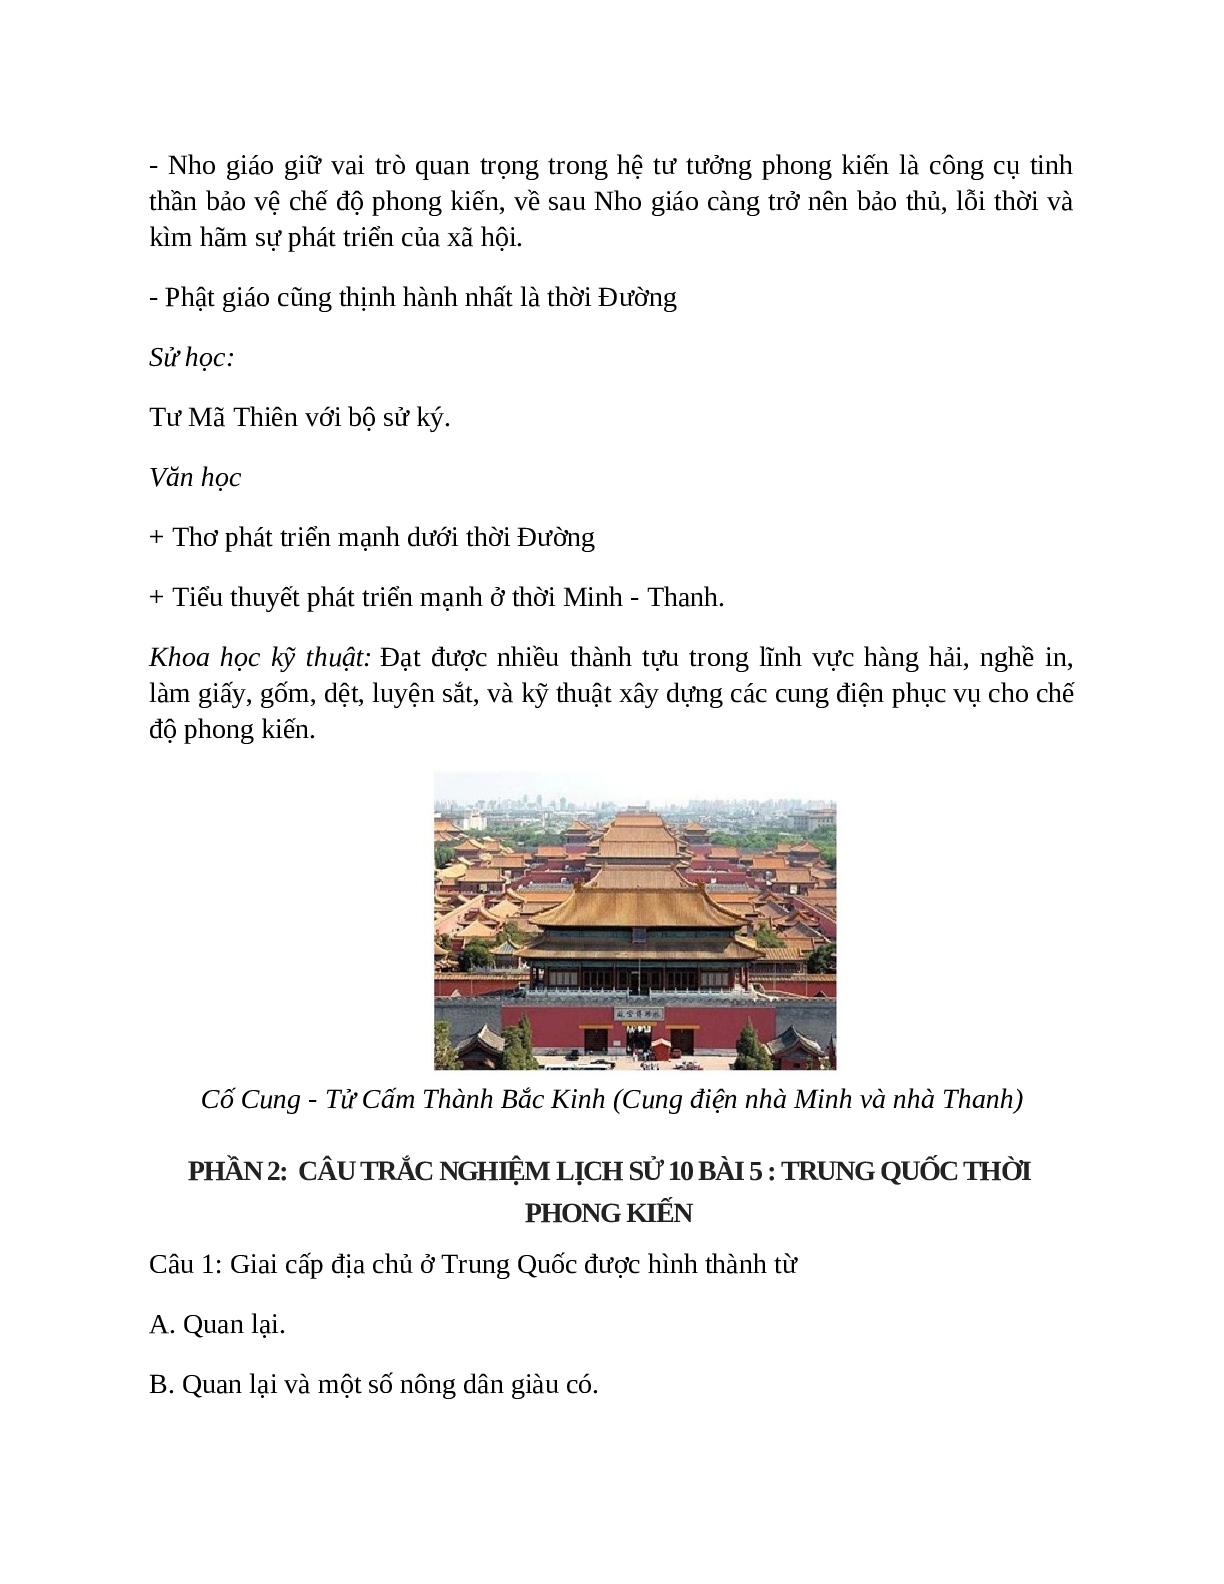 Lịch Sử 10 Bài 5 (Lý thuyết và trắc nghiệm): Trung Quốc thời phong kiến (trang 5)